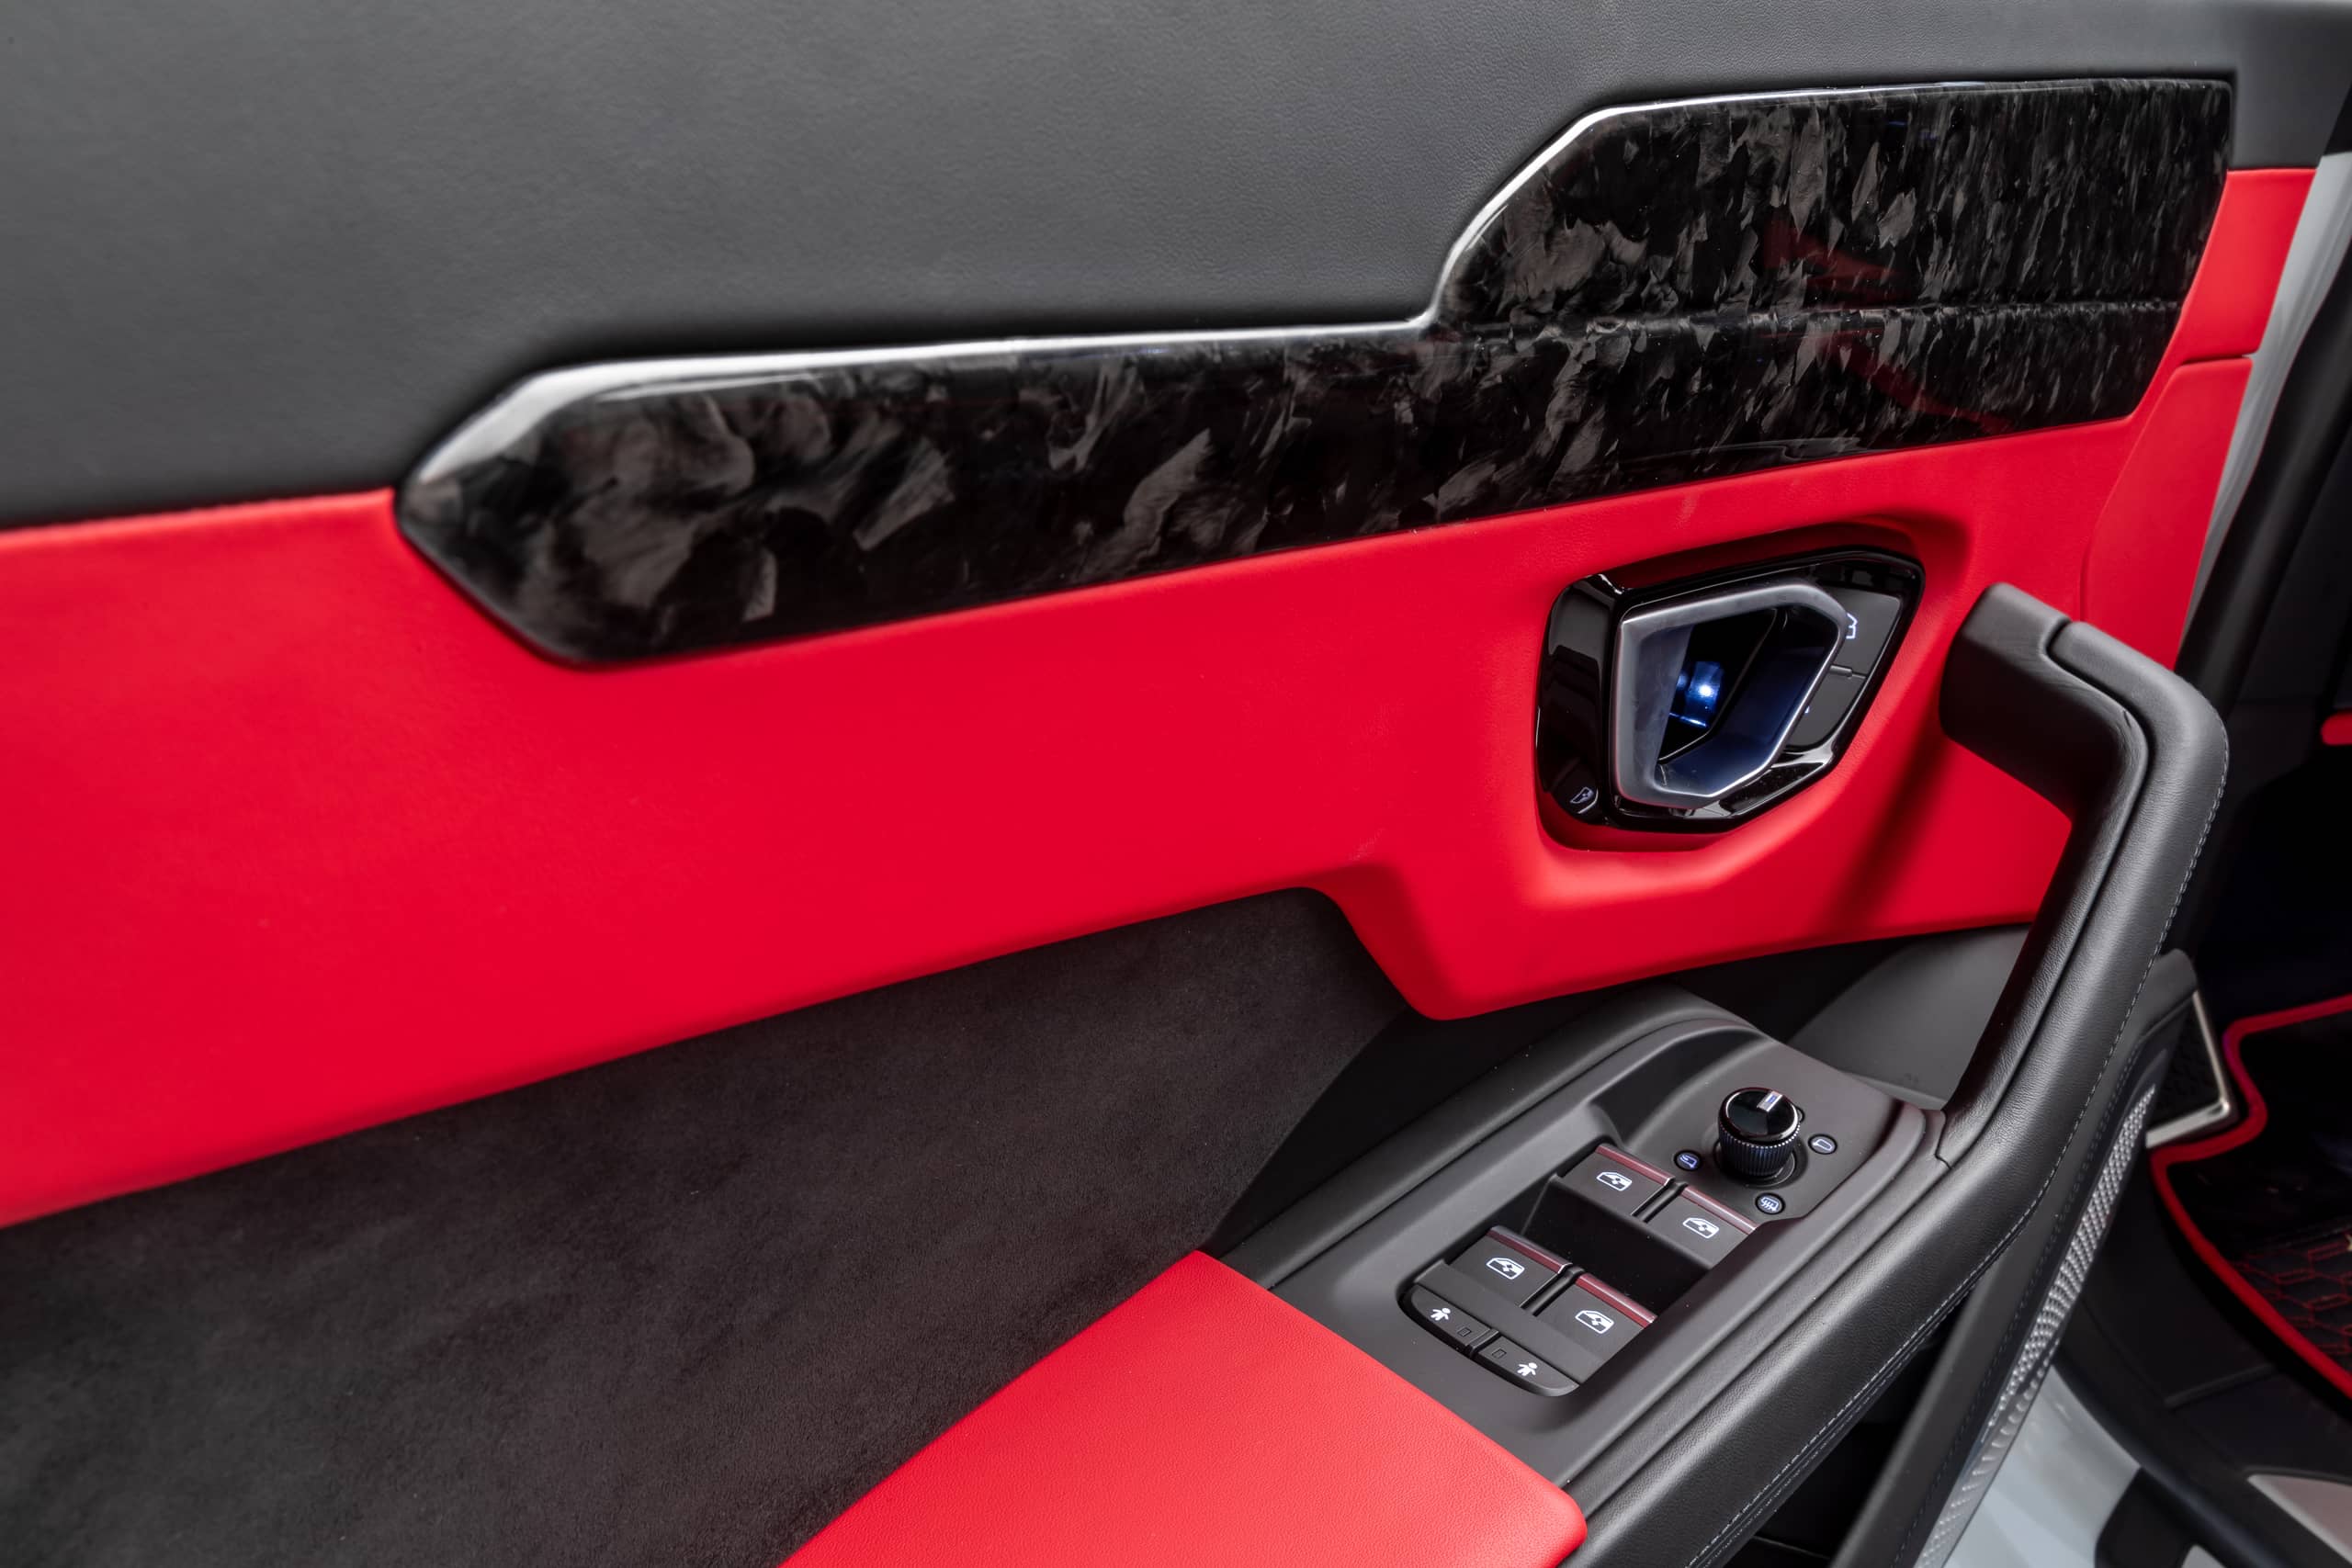 1016 Industries Lamborghini Urus Complete Interior Trim Kit